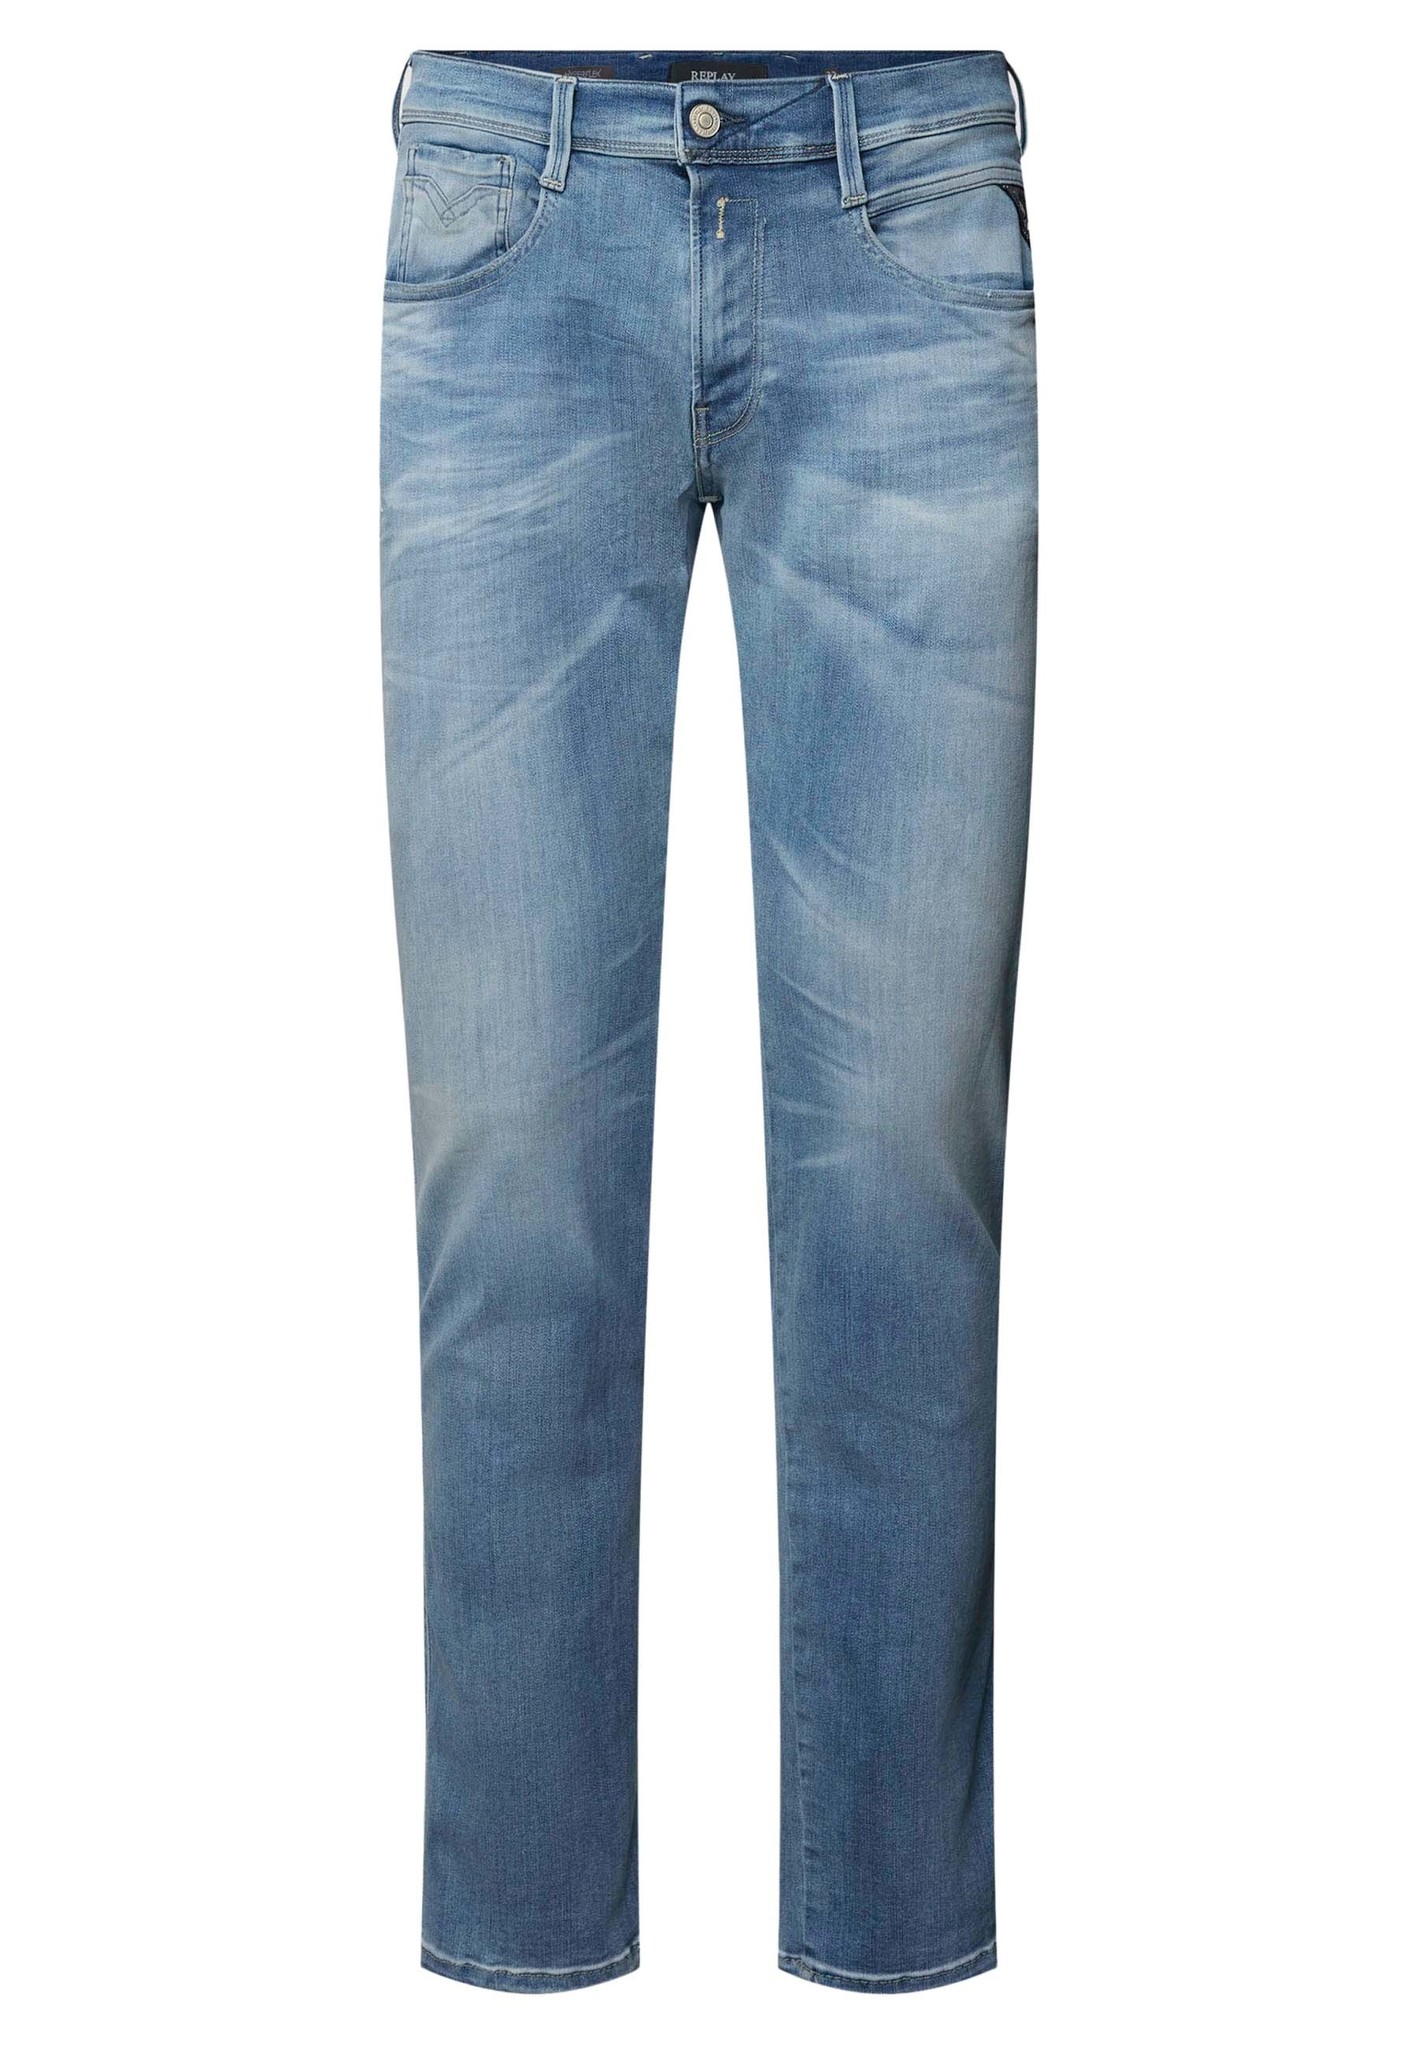 Replay jeans blauw Heren maat 35/36